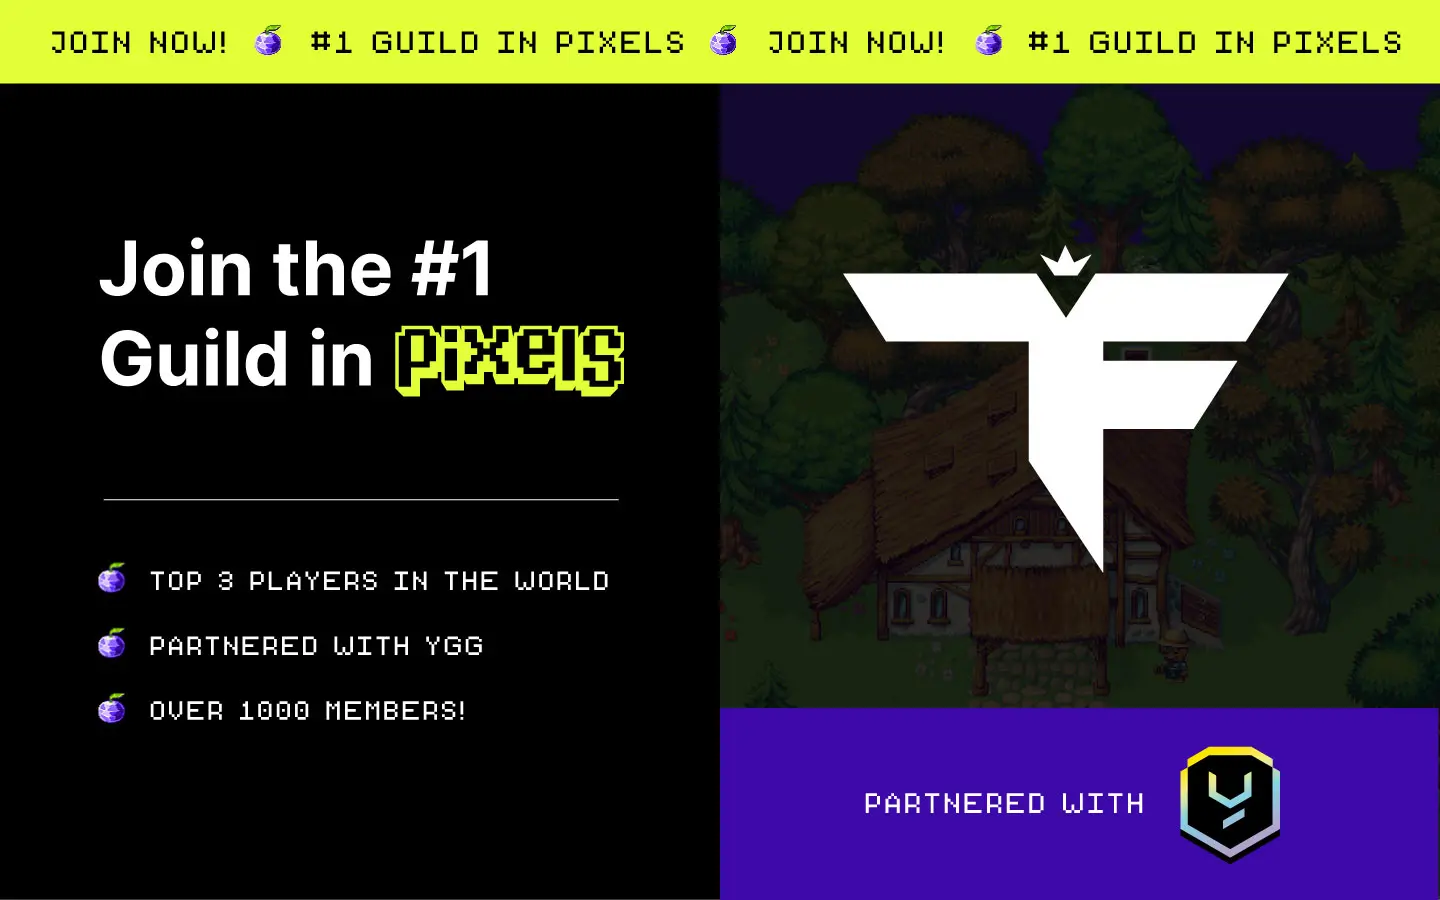 TIF the #1 guild in Pixels.